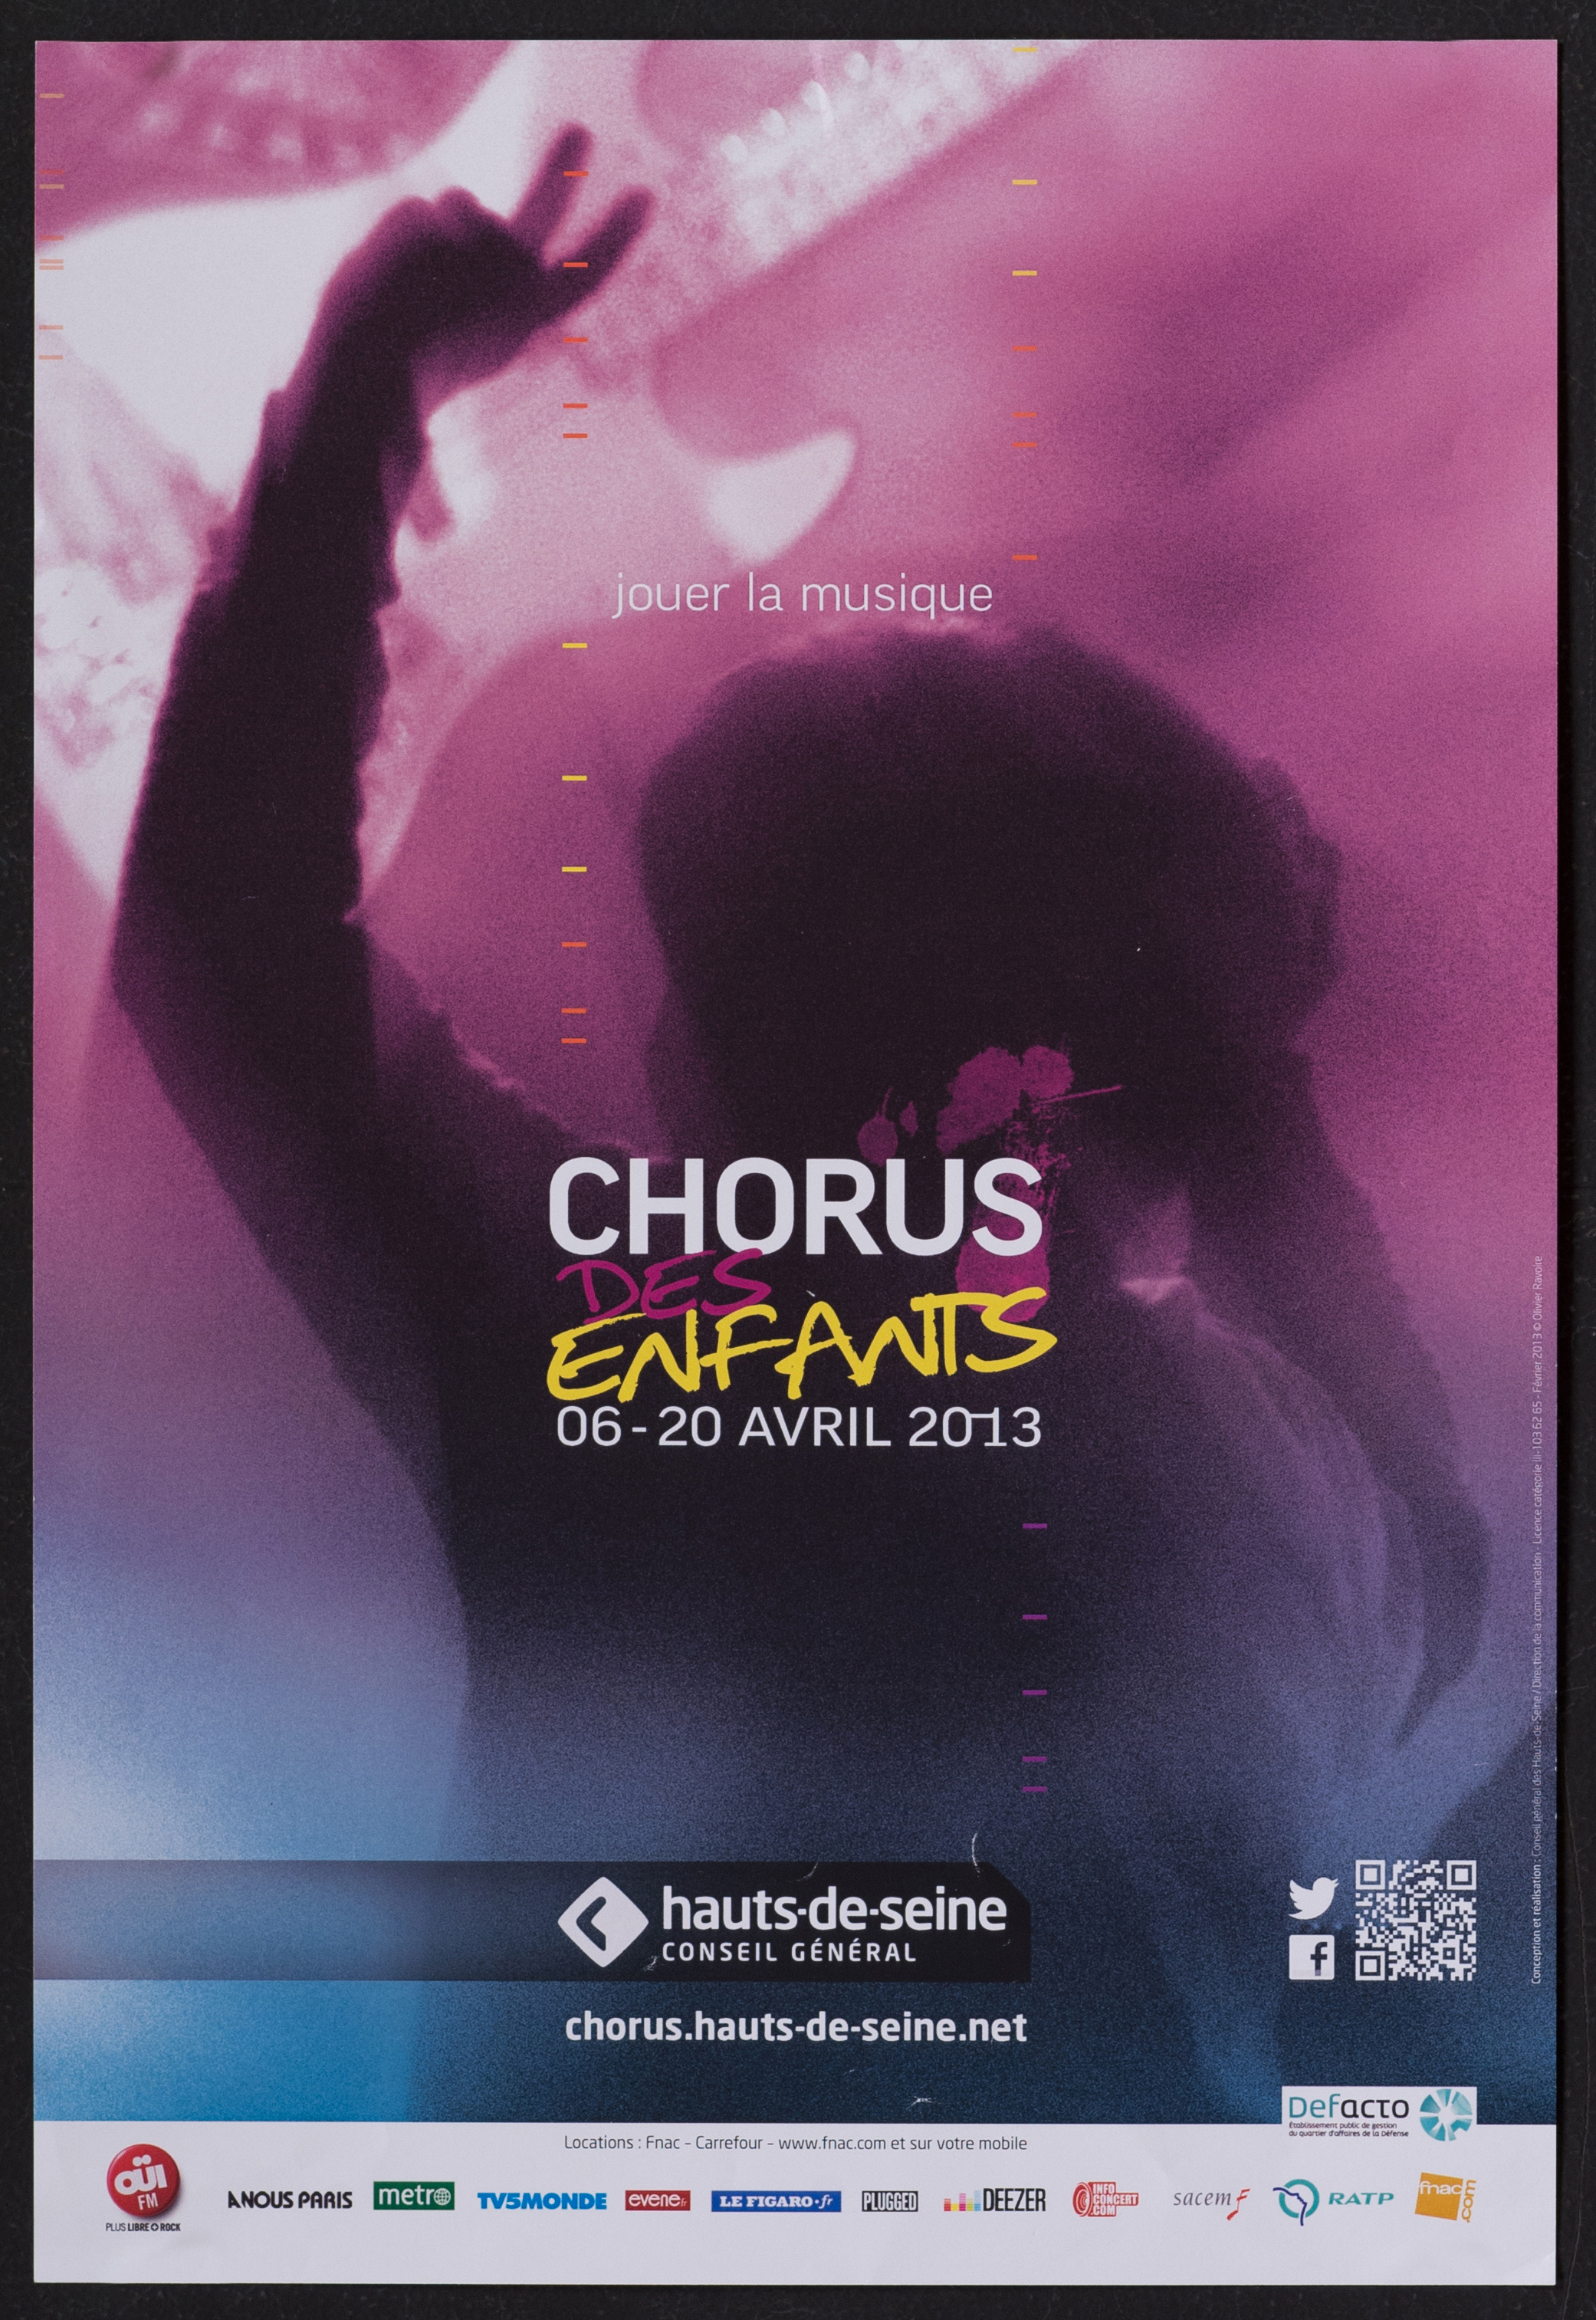 Jouer la musique. Chorus des enfants 6-20 avril 2013 /photo Olivier Ravoire. - CG 92, 2013. - 1 affiche ill. coul., 42 x 29 cm.